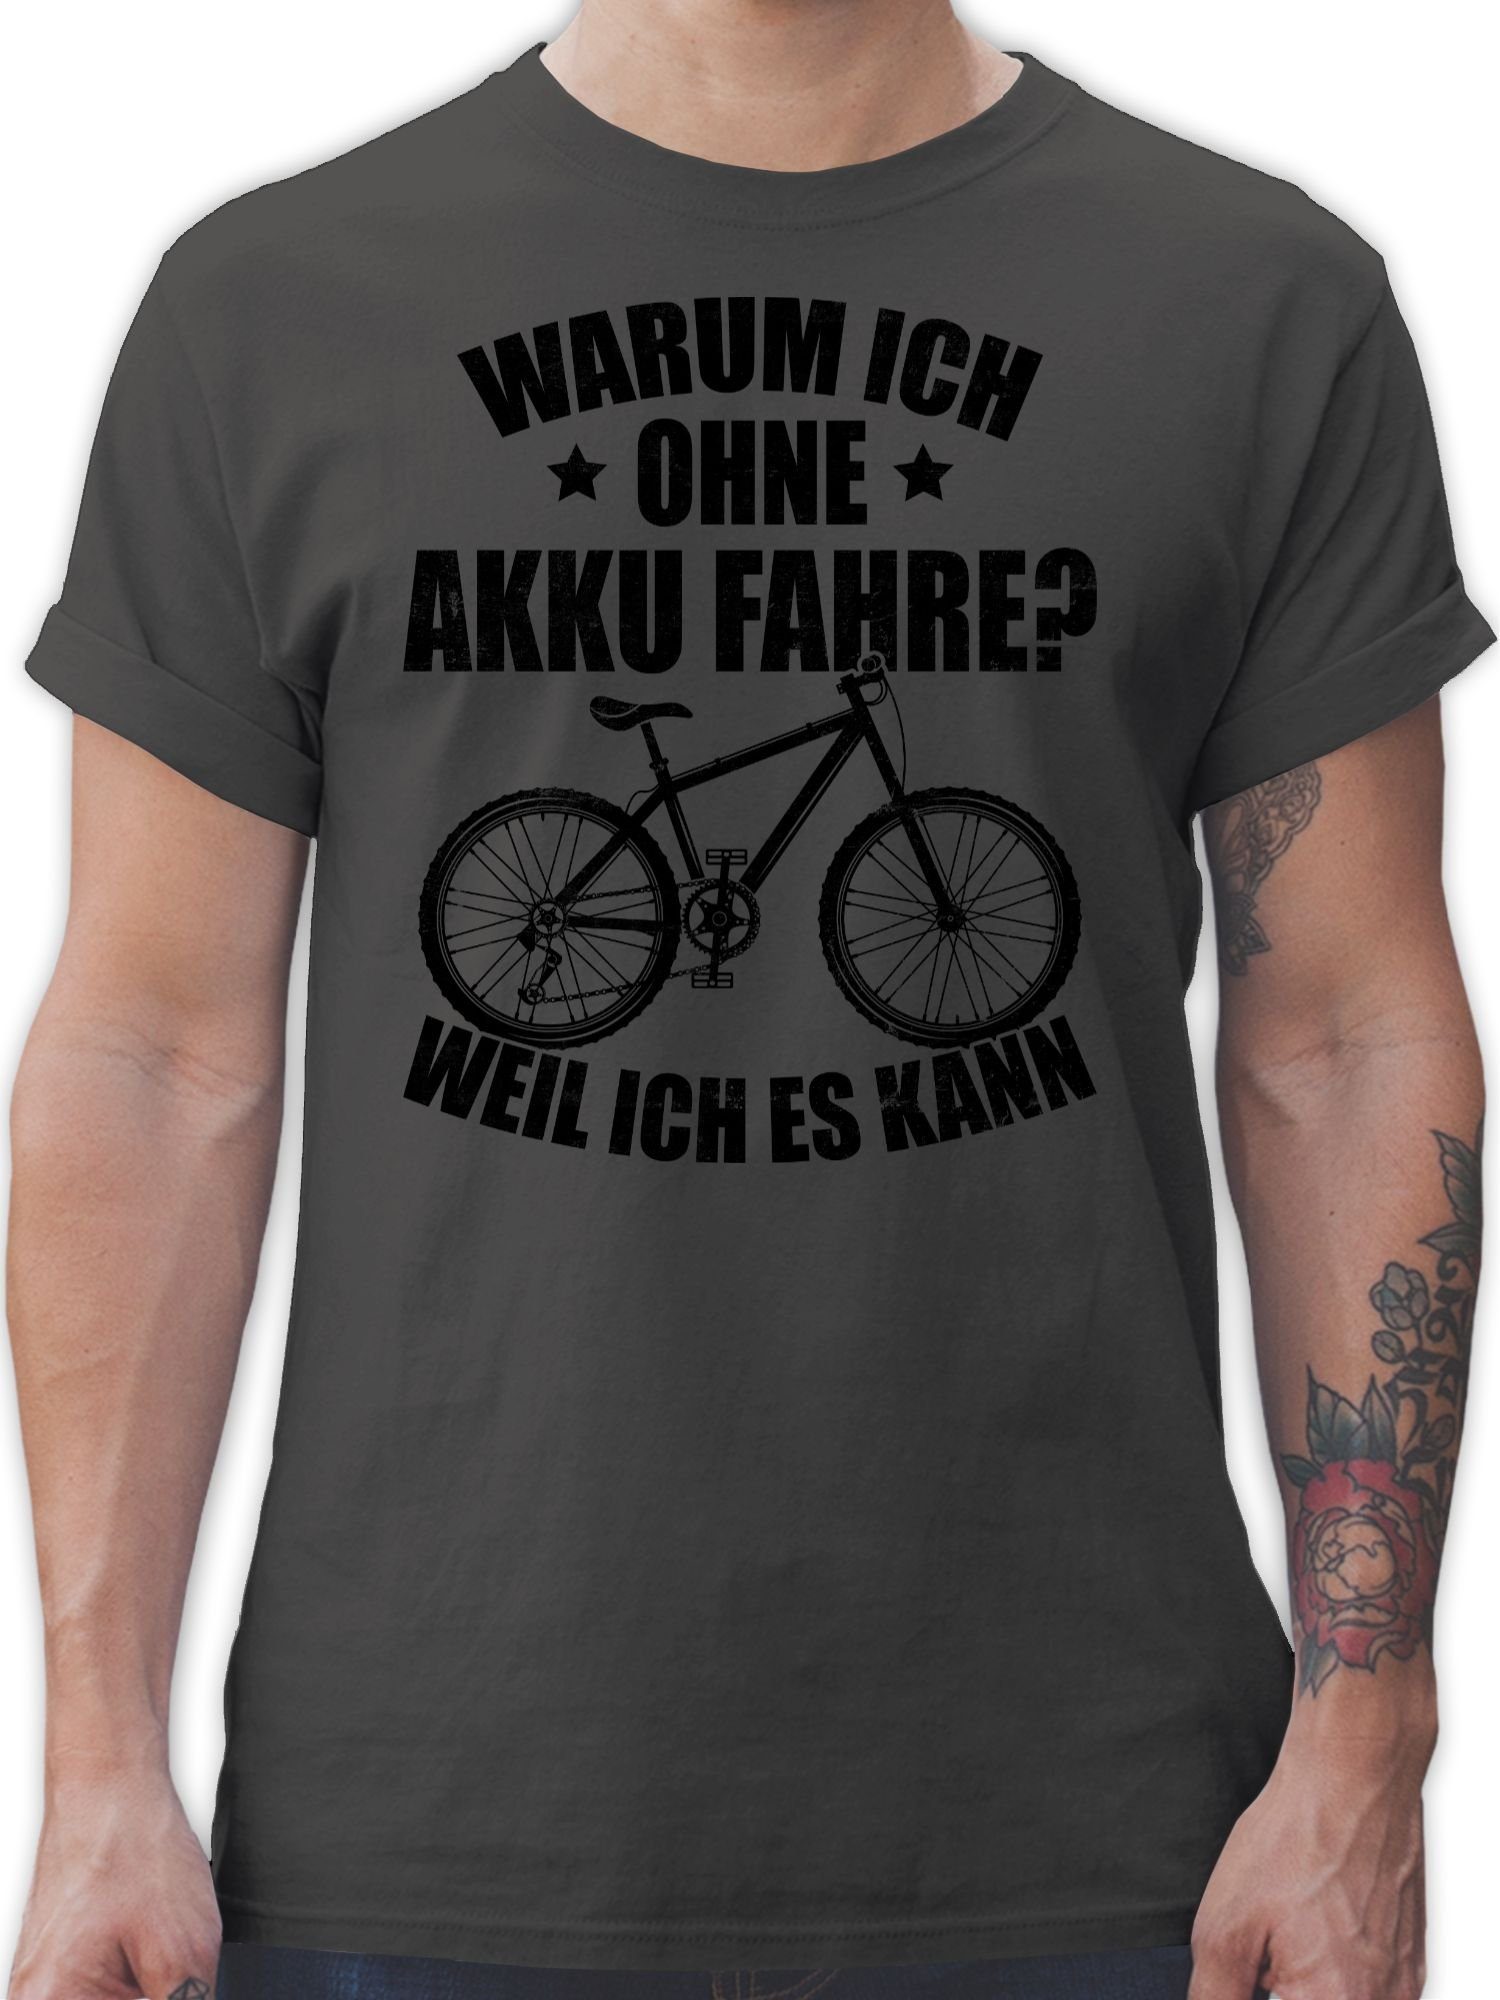 Shirtracer T-Shirt Warum ich ohne Akku fahre - weil ich es kann - schwarz Fahrrad Bekleidung Radsport